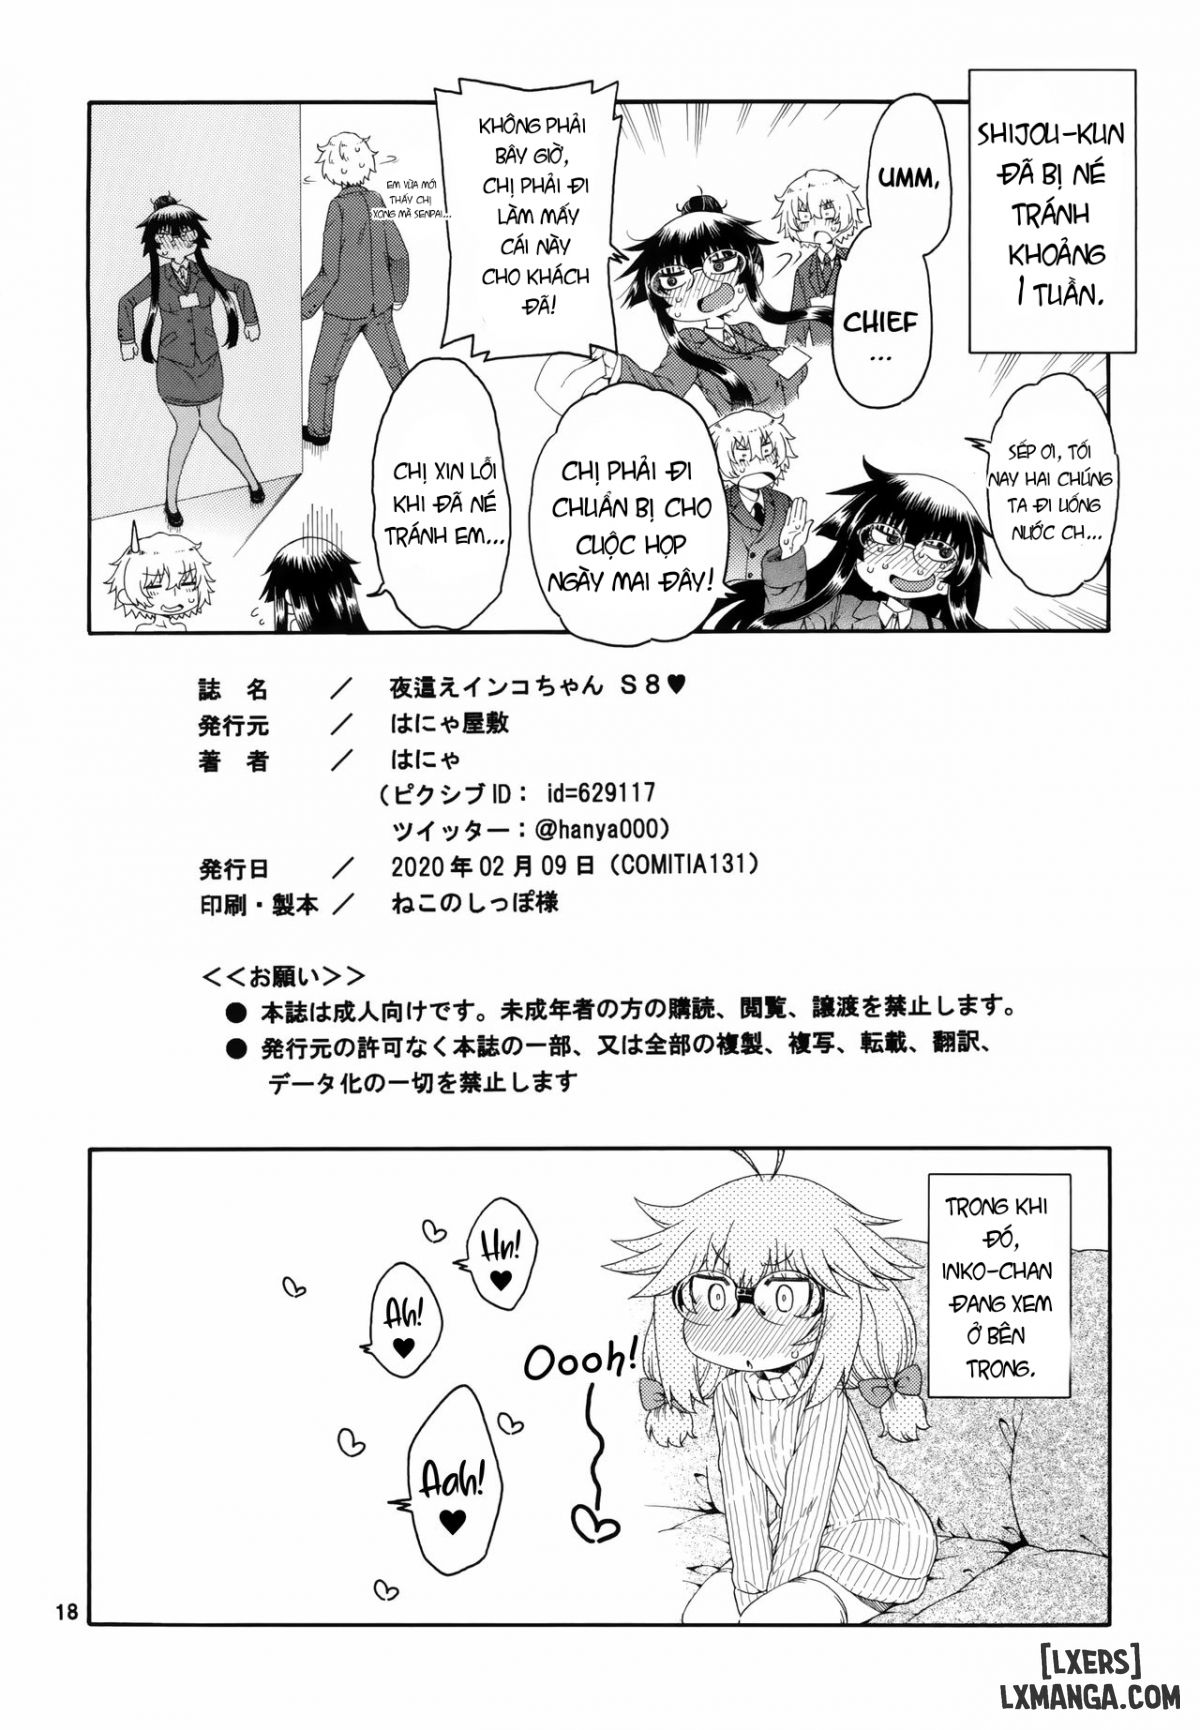 Yobae! Inko-chan S Chương 8 END Trang 16